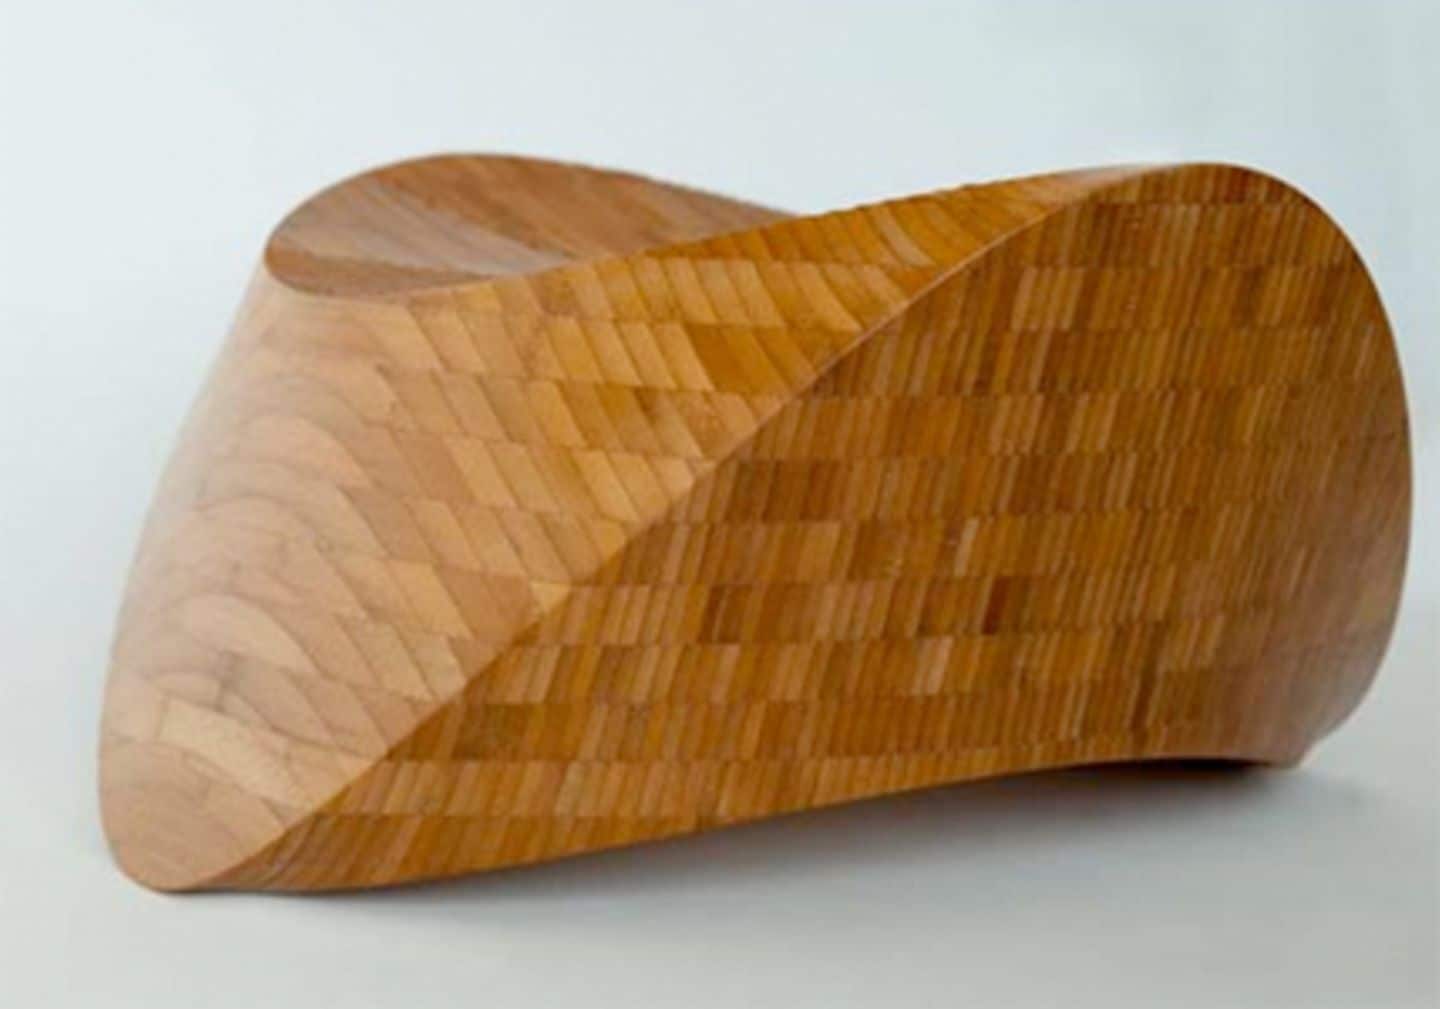 Designmoebel aus Bambus